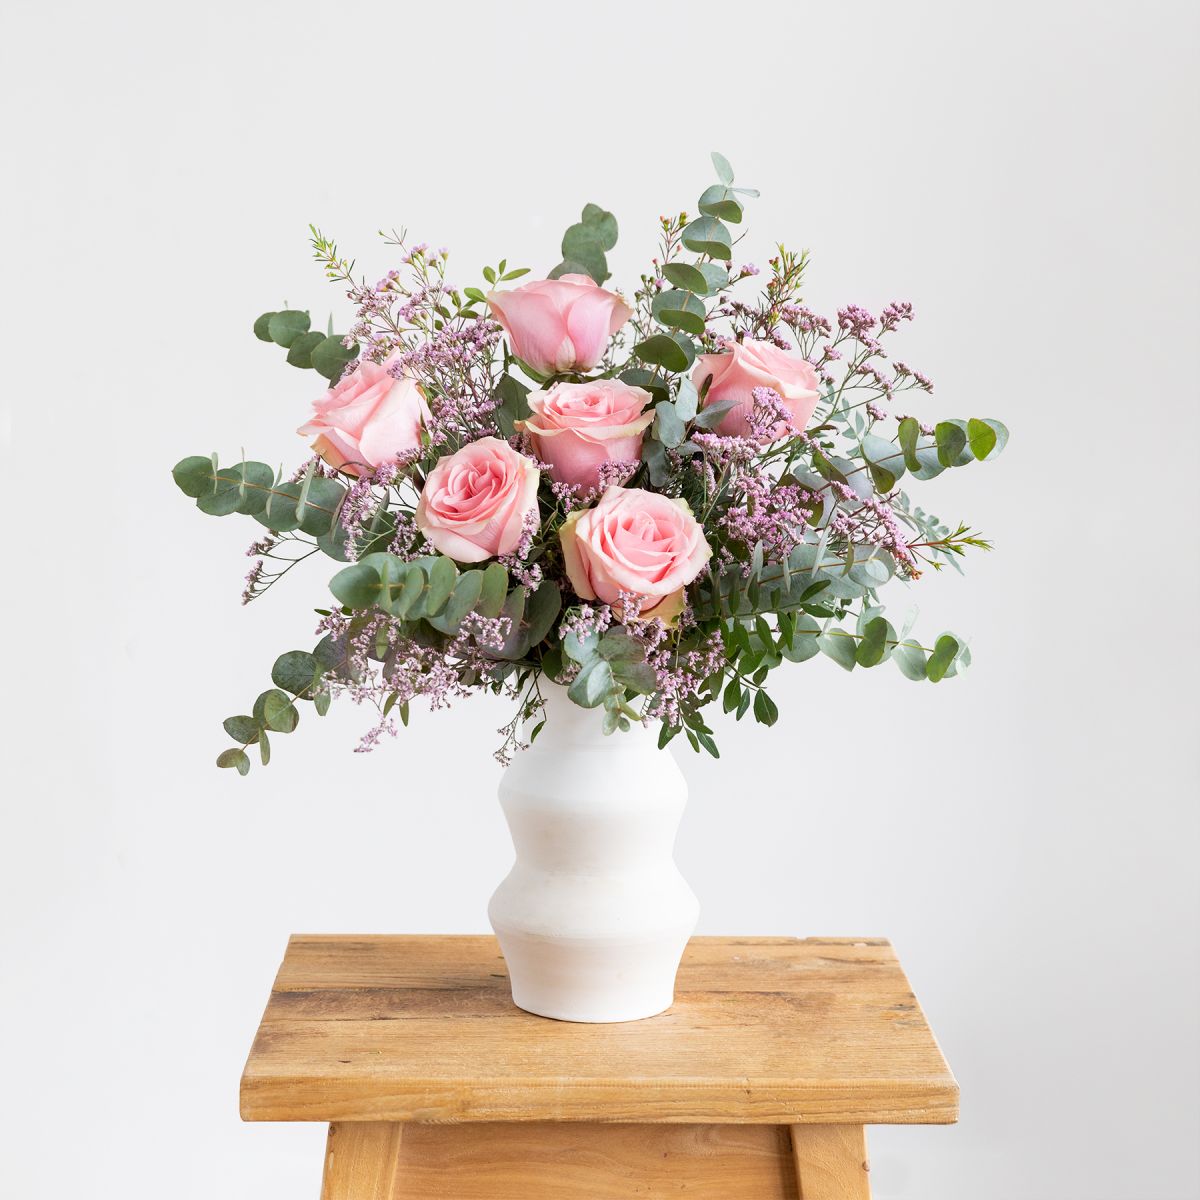 Flores de amor: las mejores flores para regalar | Colvin